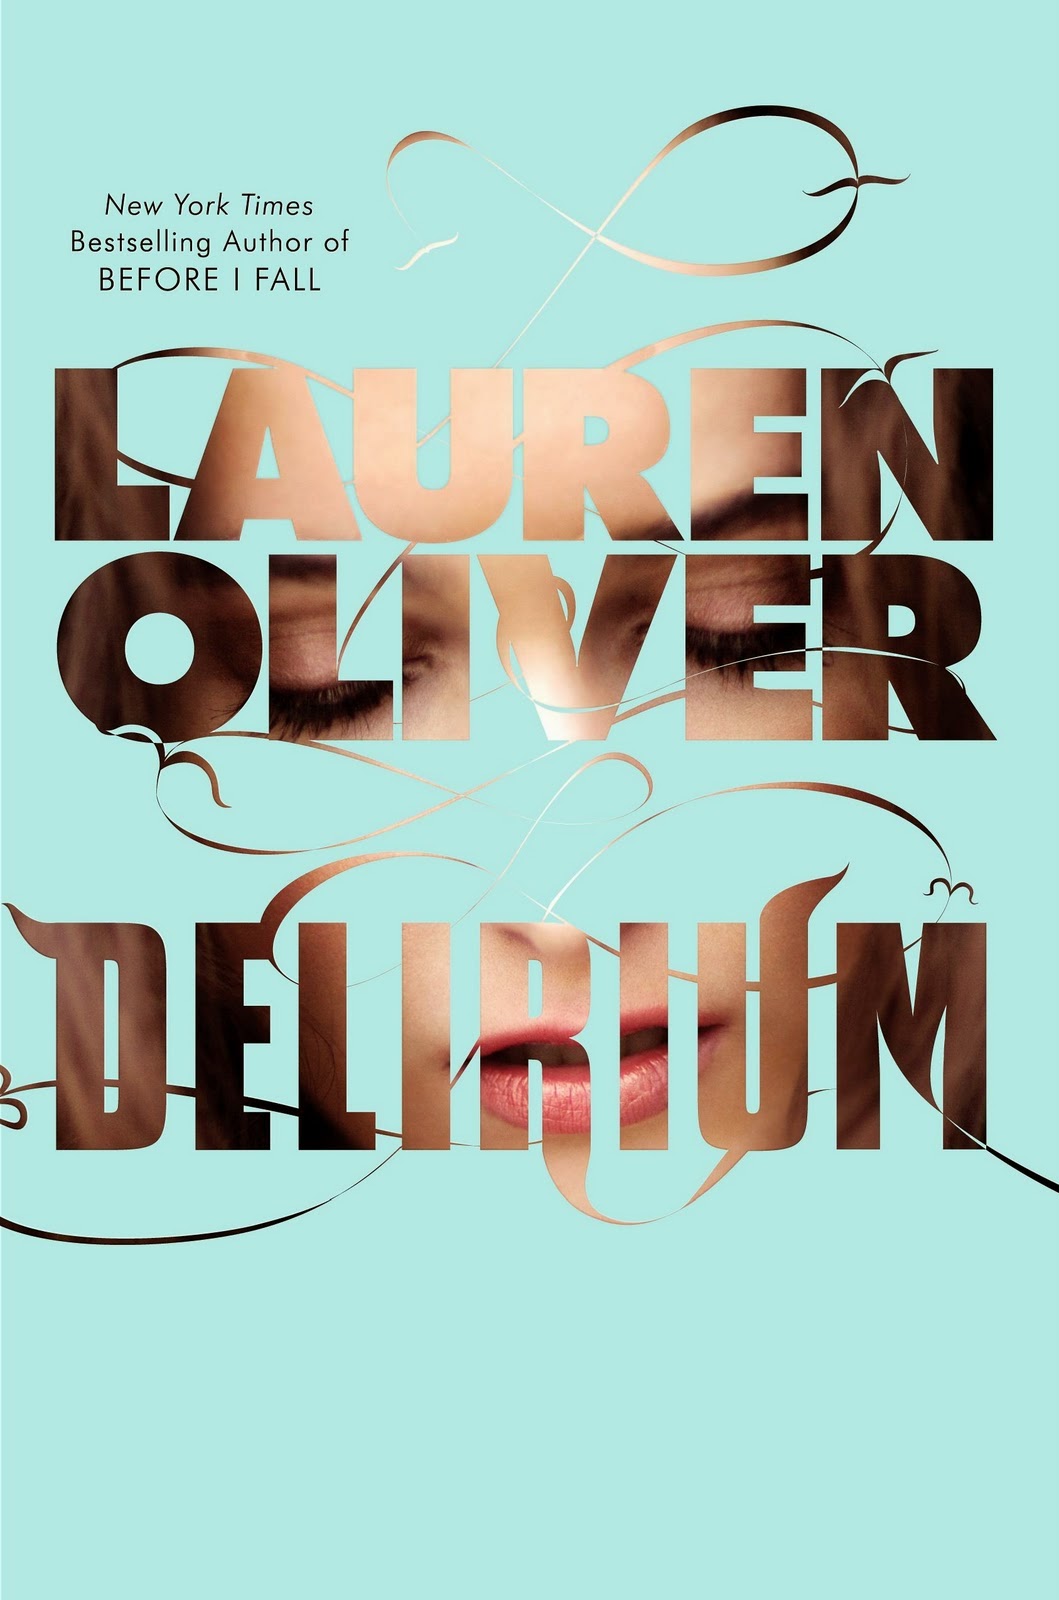 Delirium (Delirium #1) by Lauren Oliver